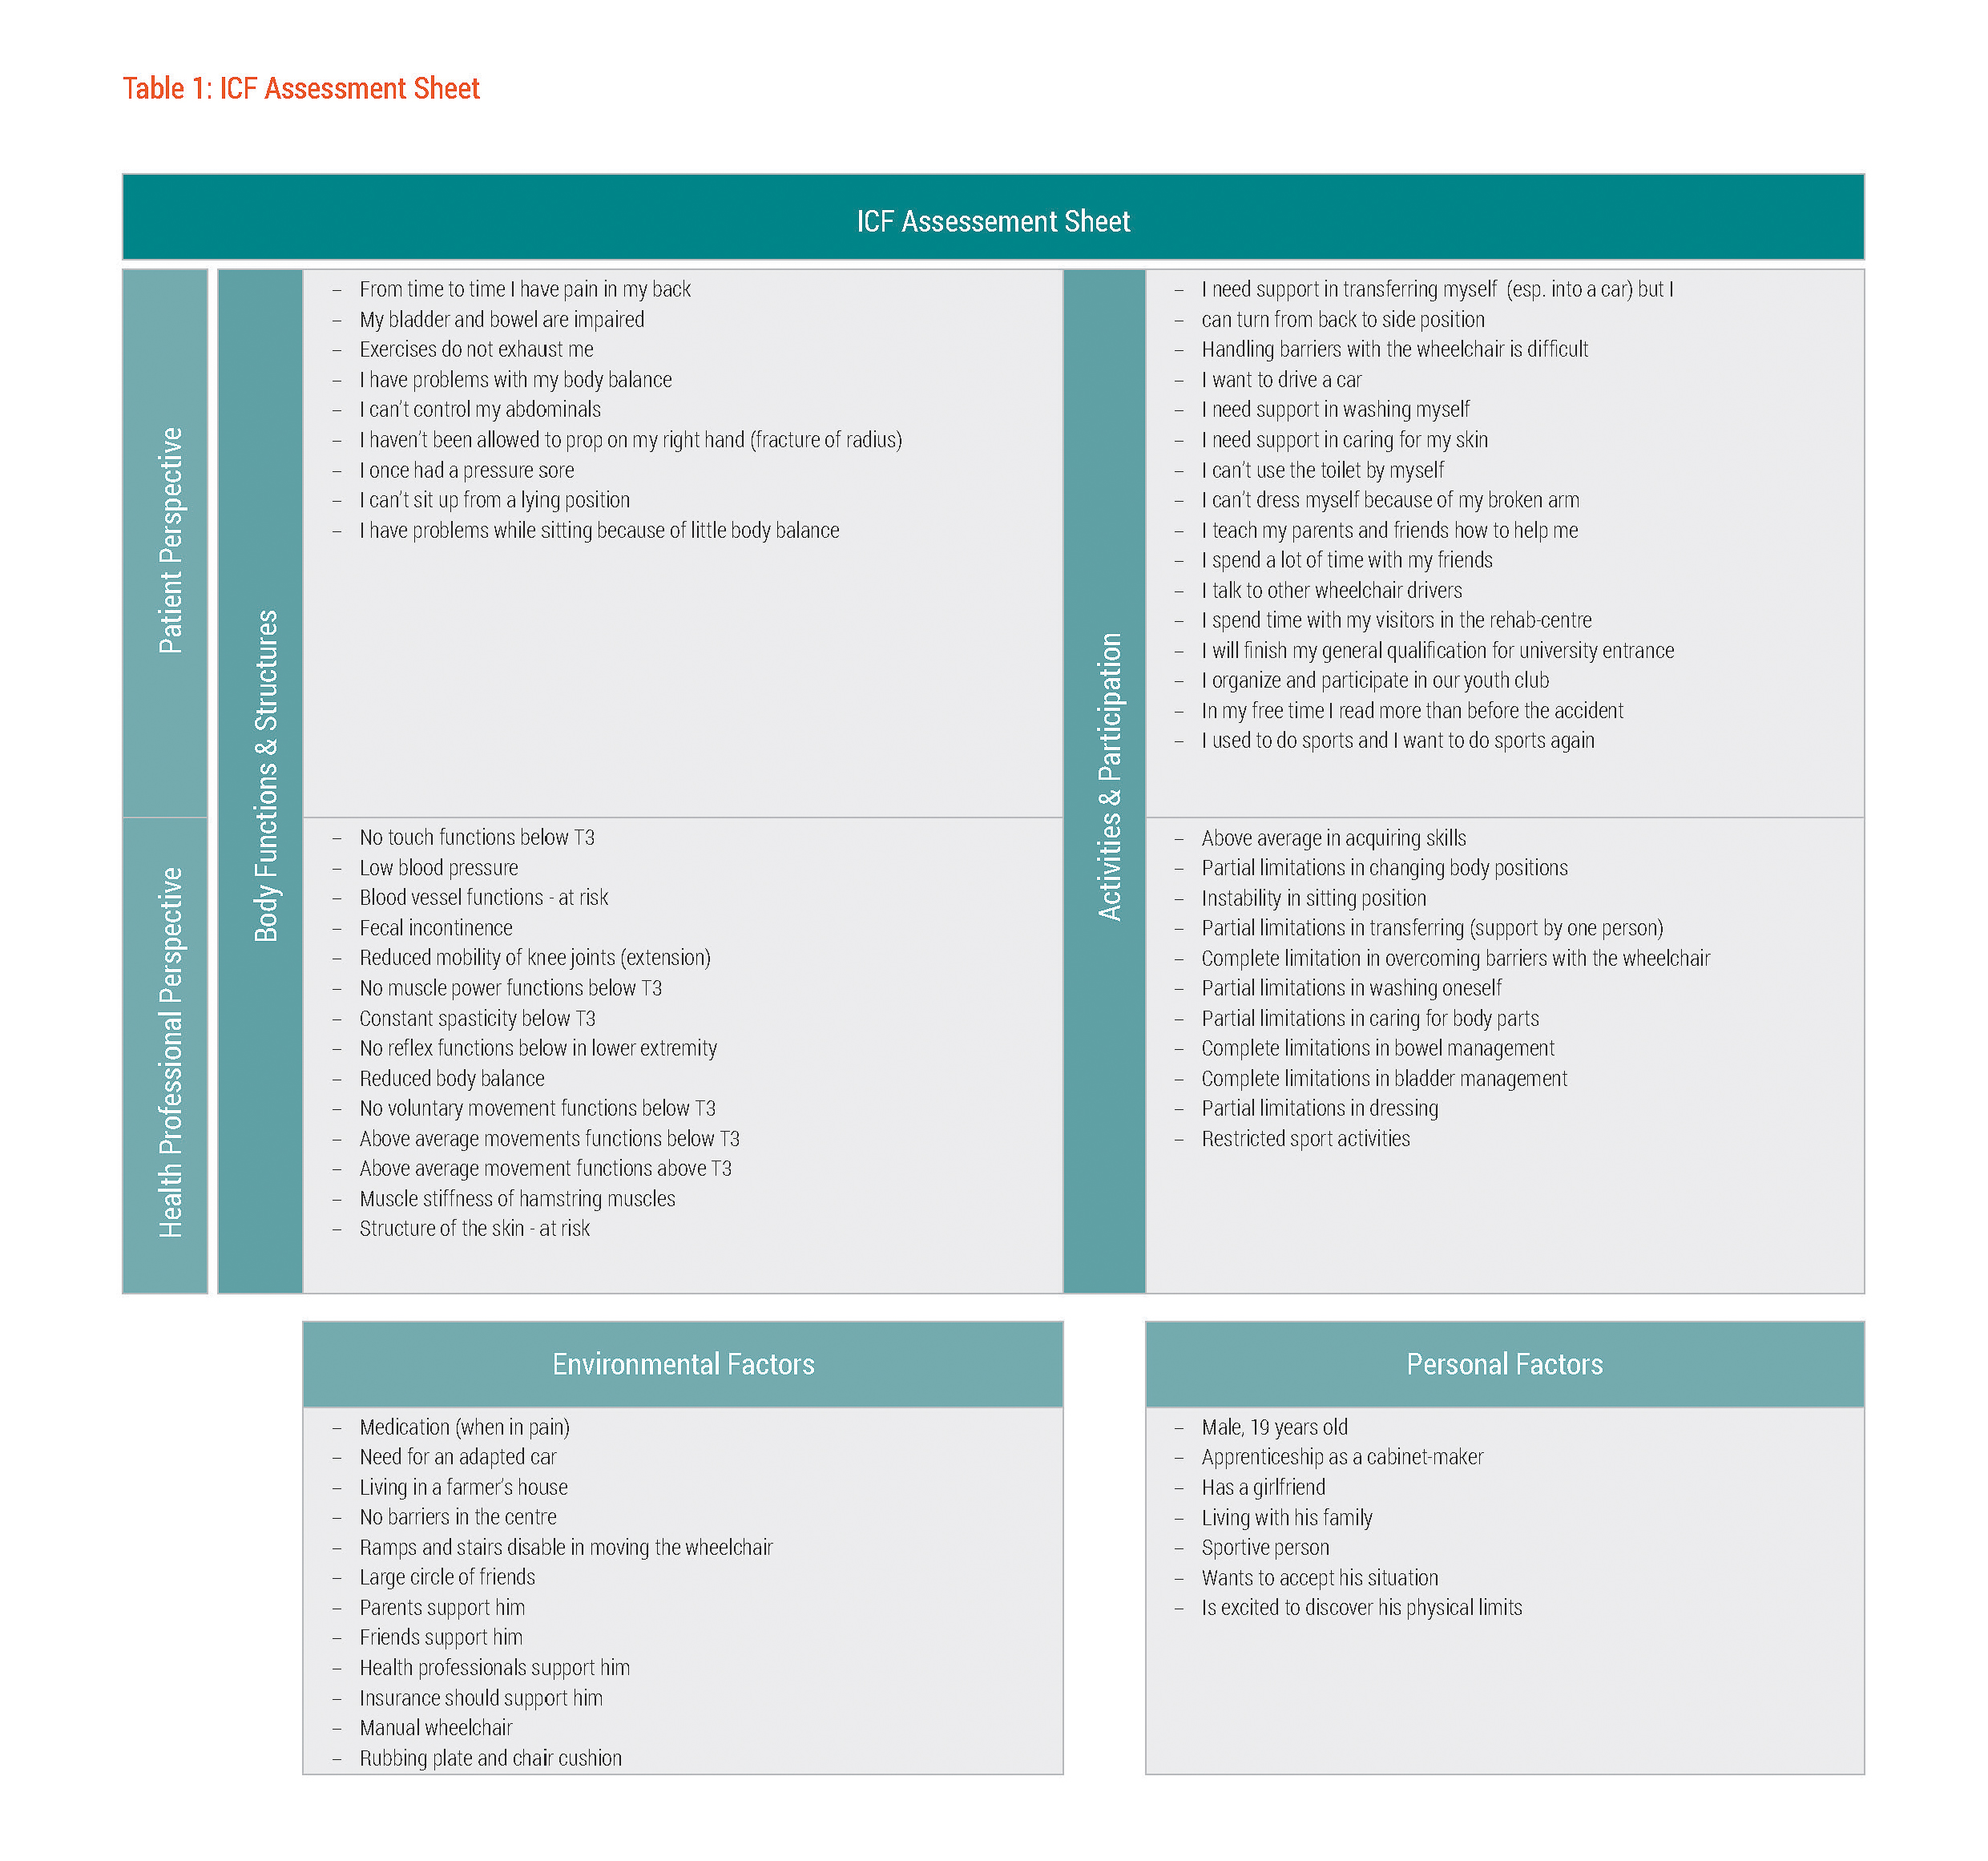 Figure 1: ICF Assessment Sheet